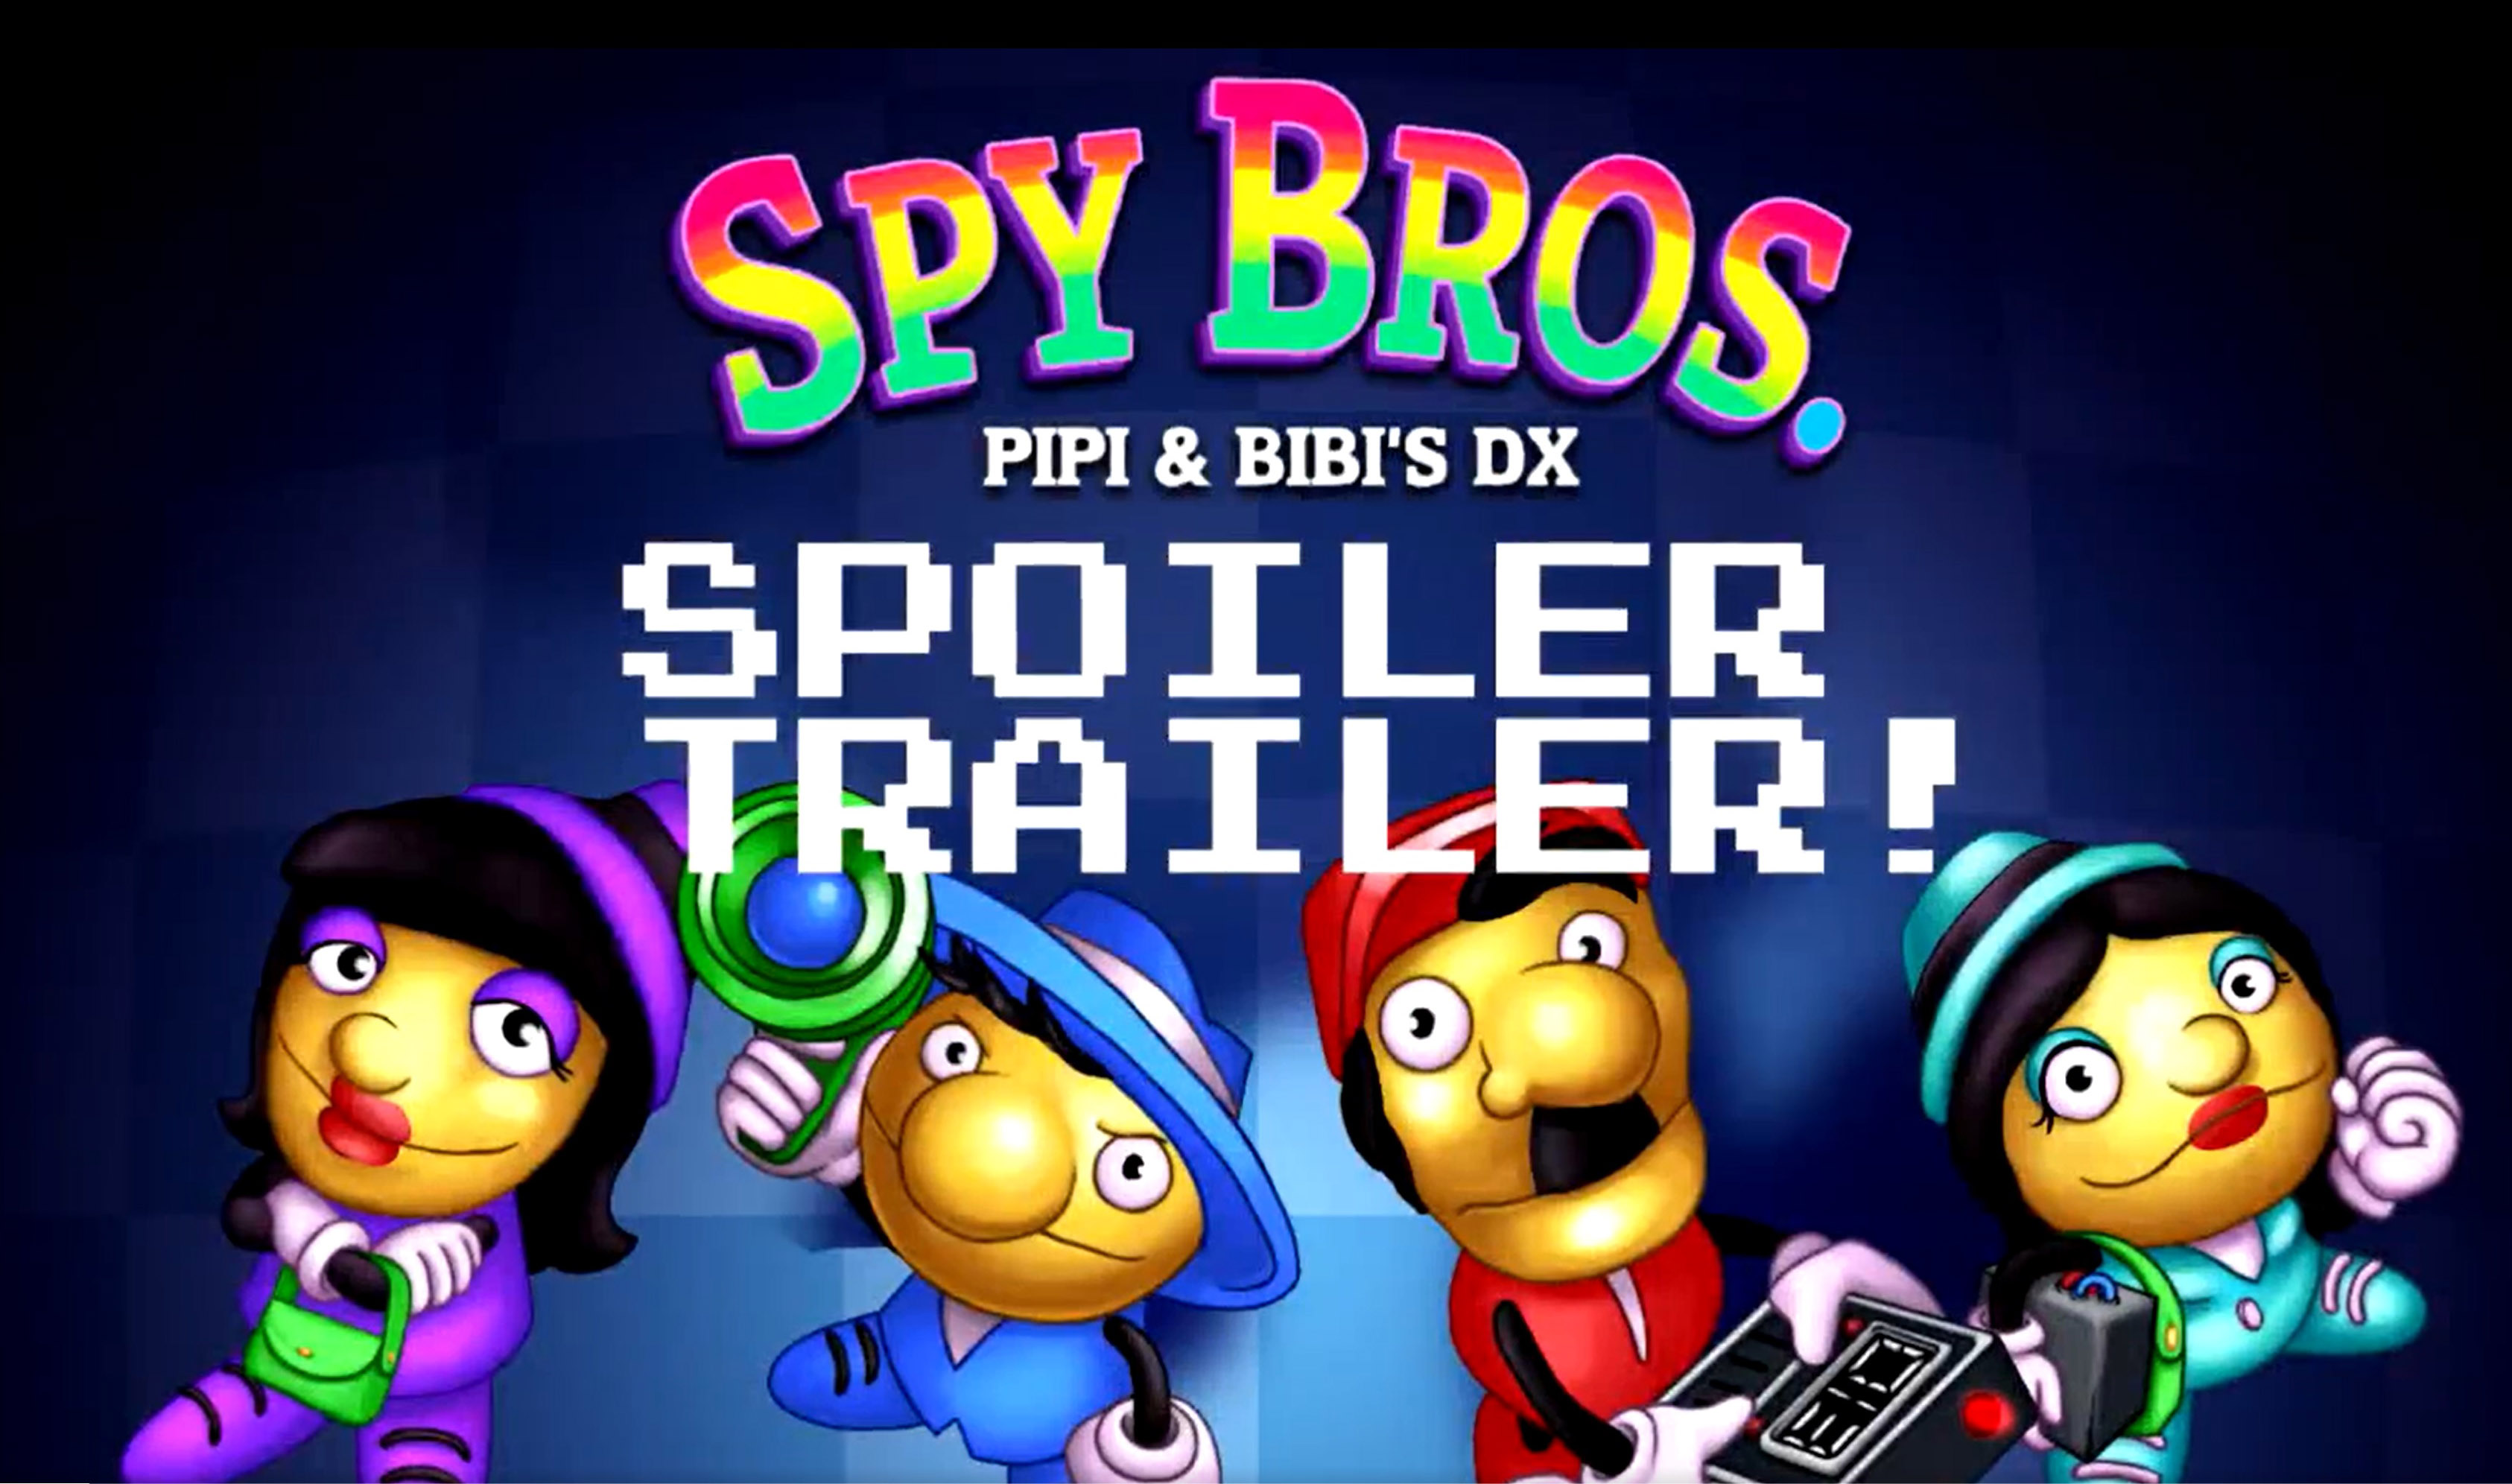 SPY BROS. PIPI&BIBI'S DX" spoiler trailer.